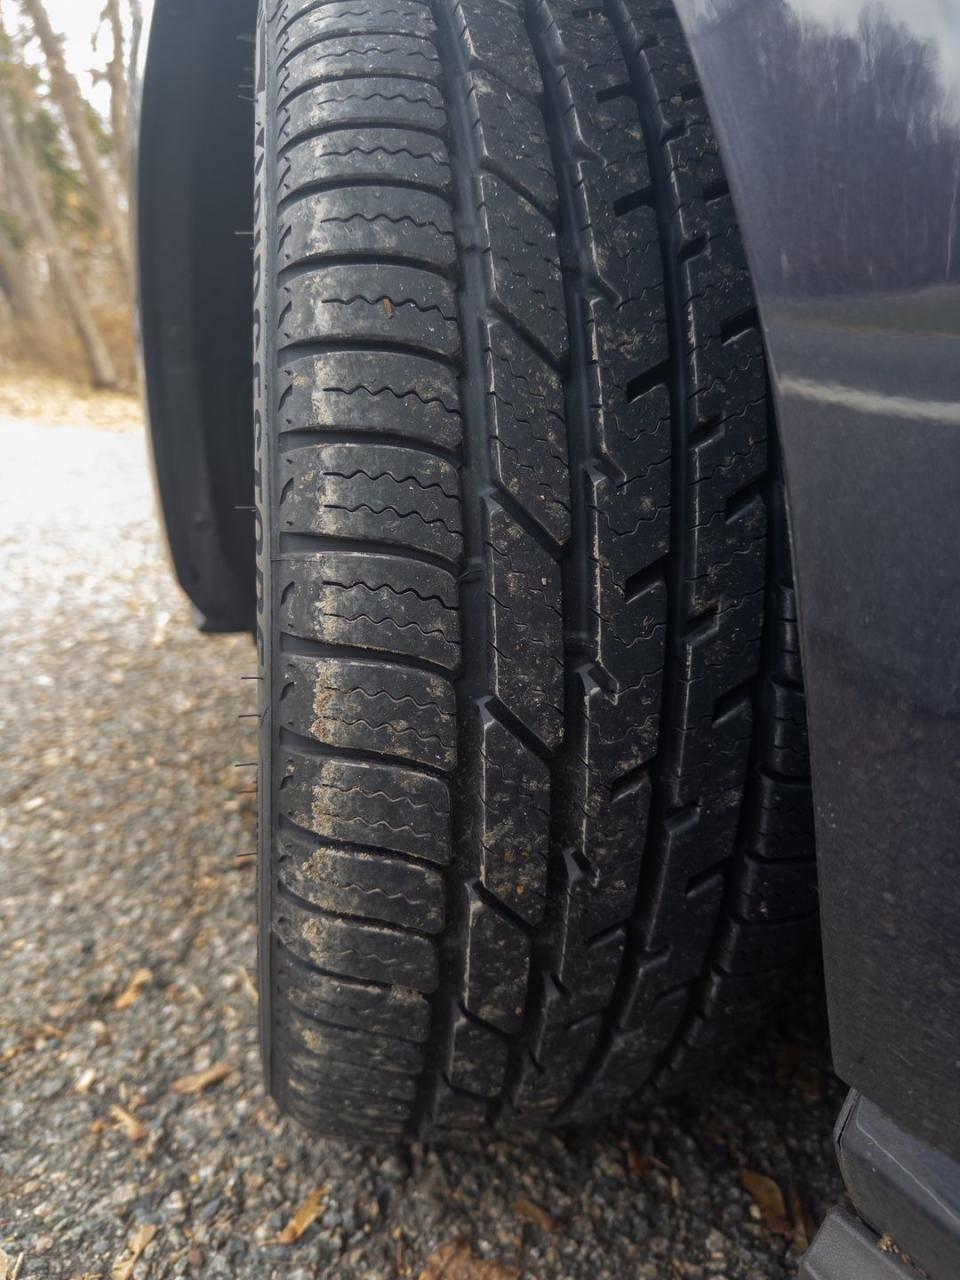 a tire on a car